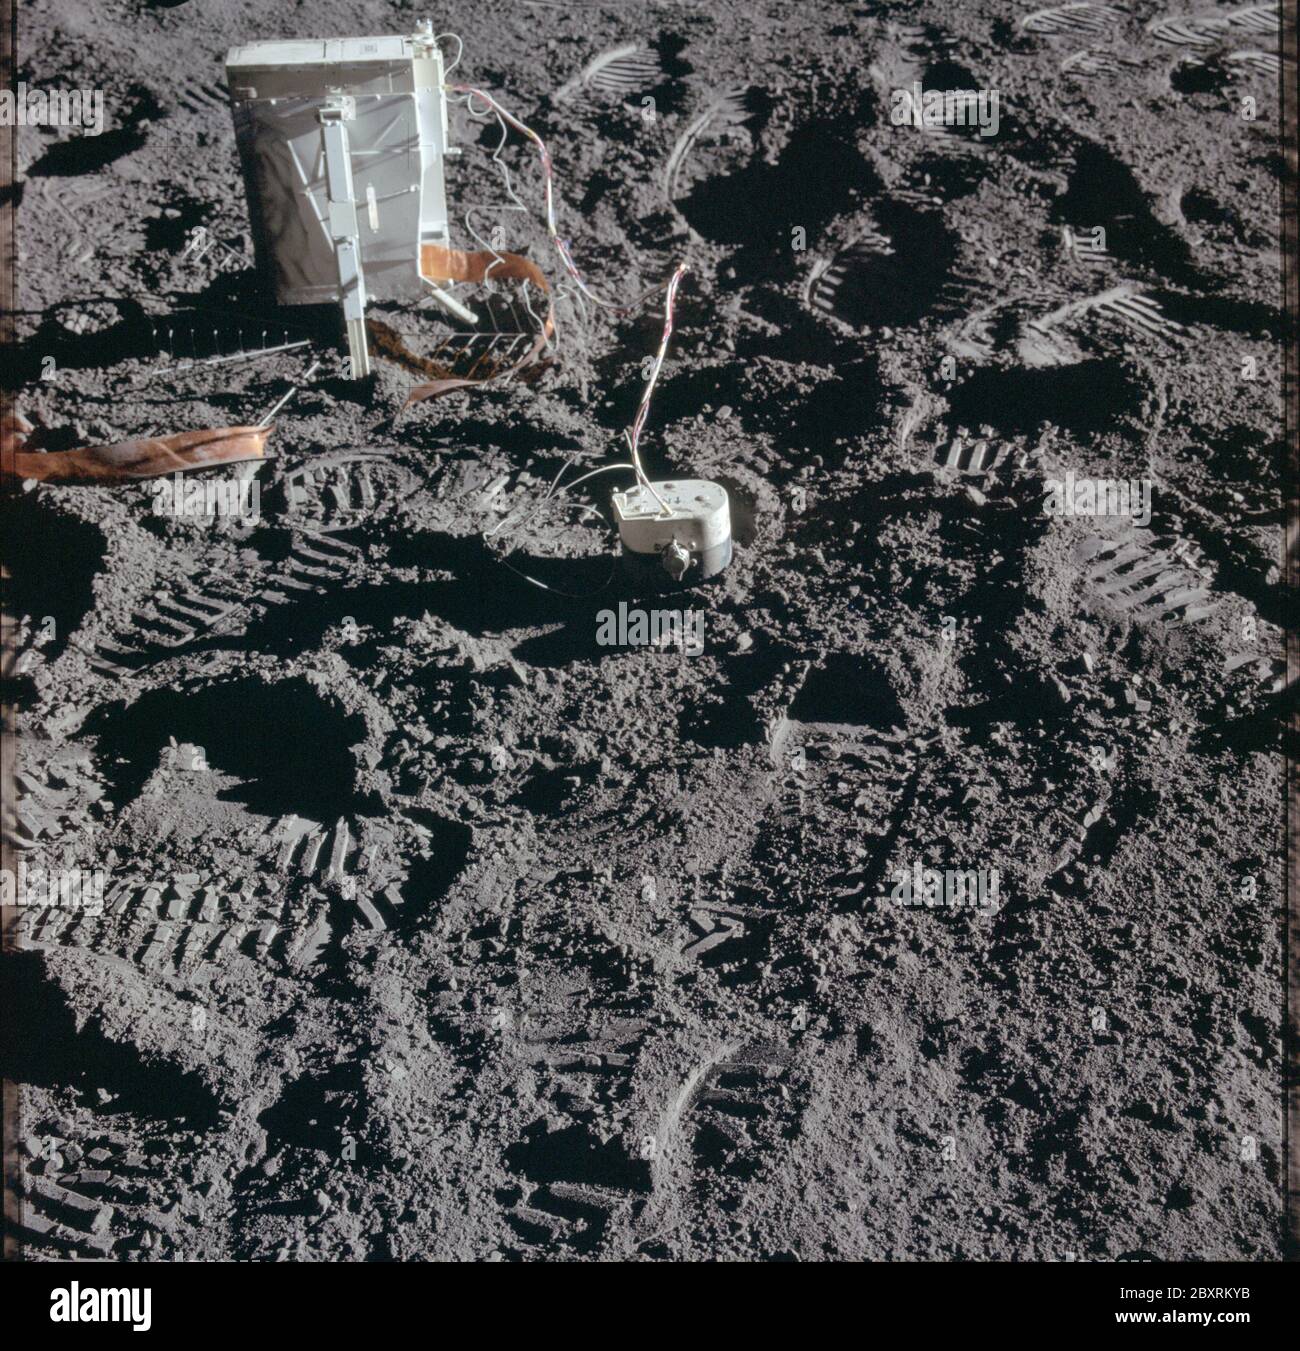 AS14-67-9373 - Apollo 14 - Apollo 14 Missionsbild - Ansicht des CPLEE-Pakets.; Umfang und Inhalt: Die Originaldatenbank beschreibt dies als: Beschreibung: Ansicht des CPLEE-Pakets (charged Particle Lunar Environment Experiment). Die Aufnahmen wurden von den Astronauten Shepard und Mitchell während EVA 1 der Apollo 14 Mission gemacht. Original Film Magazin wurde mit JJ beschriftet, Film-Typ war S0168 (High Speed Color Reversal, Innen / Oberfläche), 60mm Objektiv mit einer Sonnenhöhe von 12 Grad. Themengebiet: Apollo 14 Flug, Mond (Planet) Kategorien: EVA Original: Film - 70MM CT Interior Exterior: Exterior Ground Orbit Stockfoto